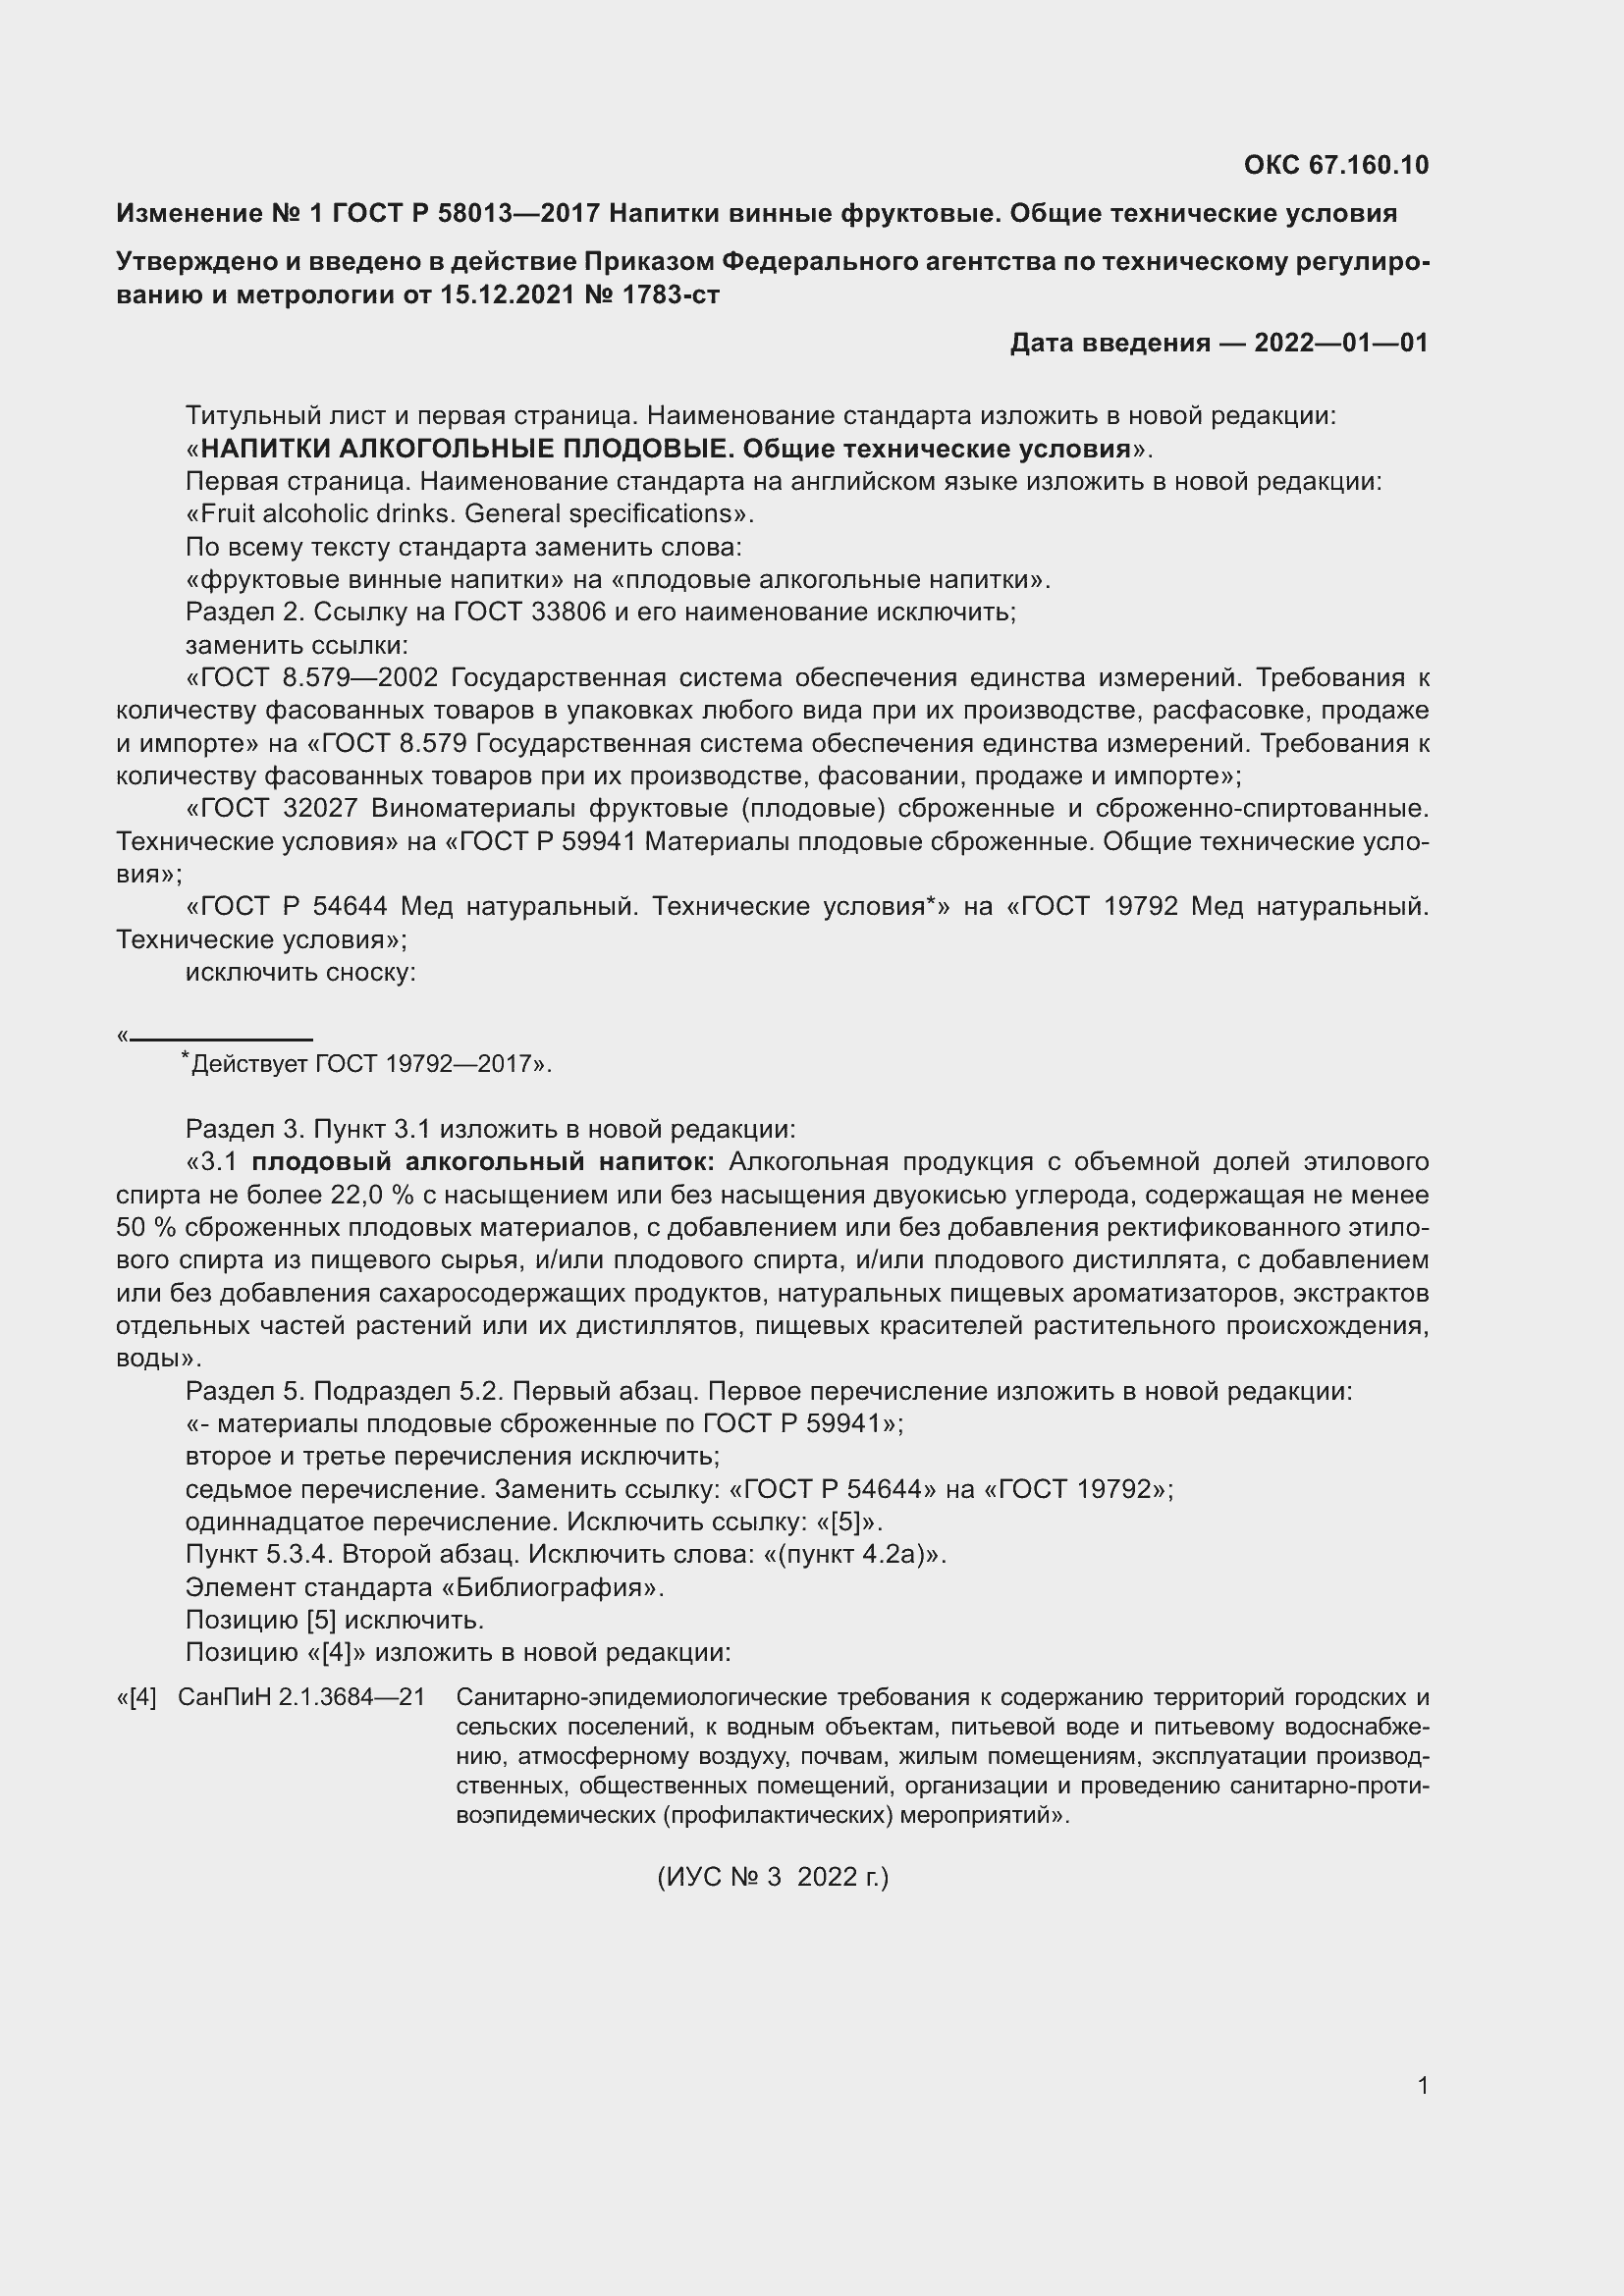 Изменение №1 к ГОСТ Р 58013-2017